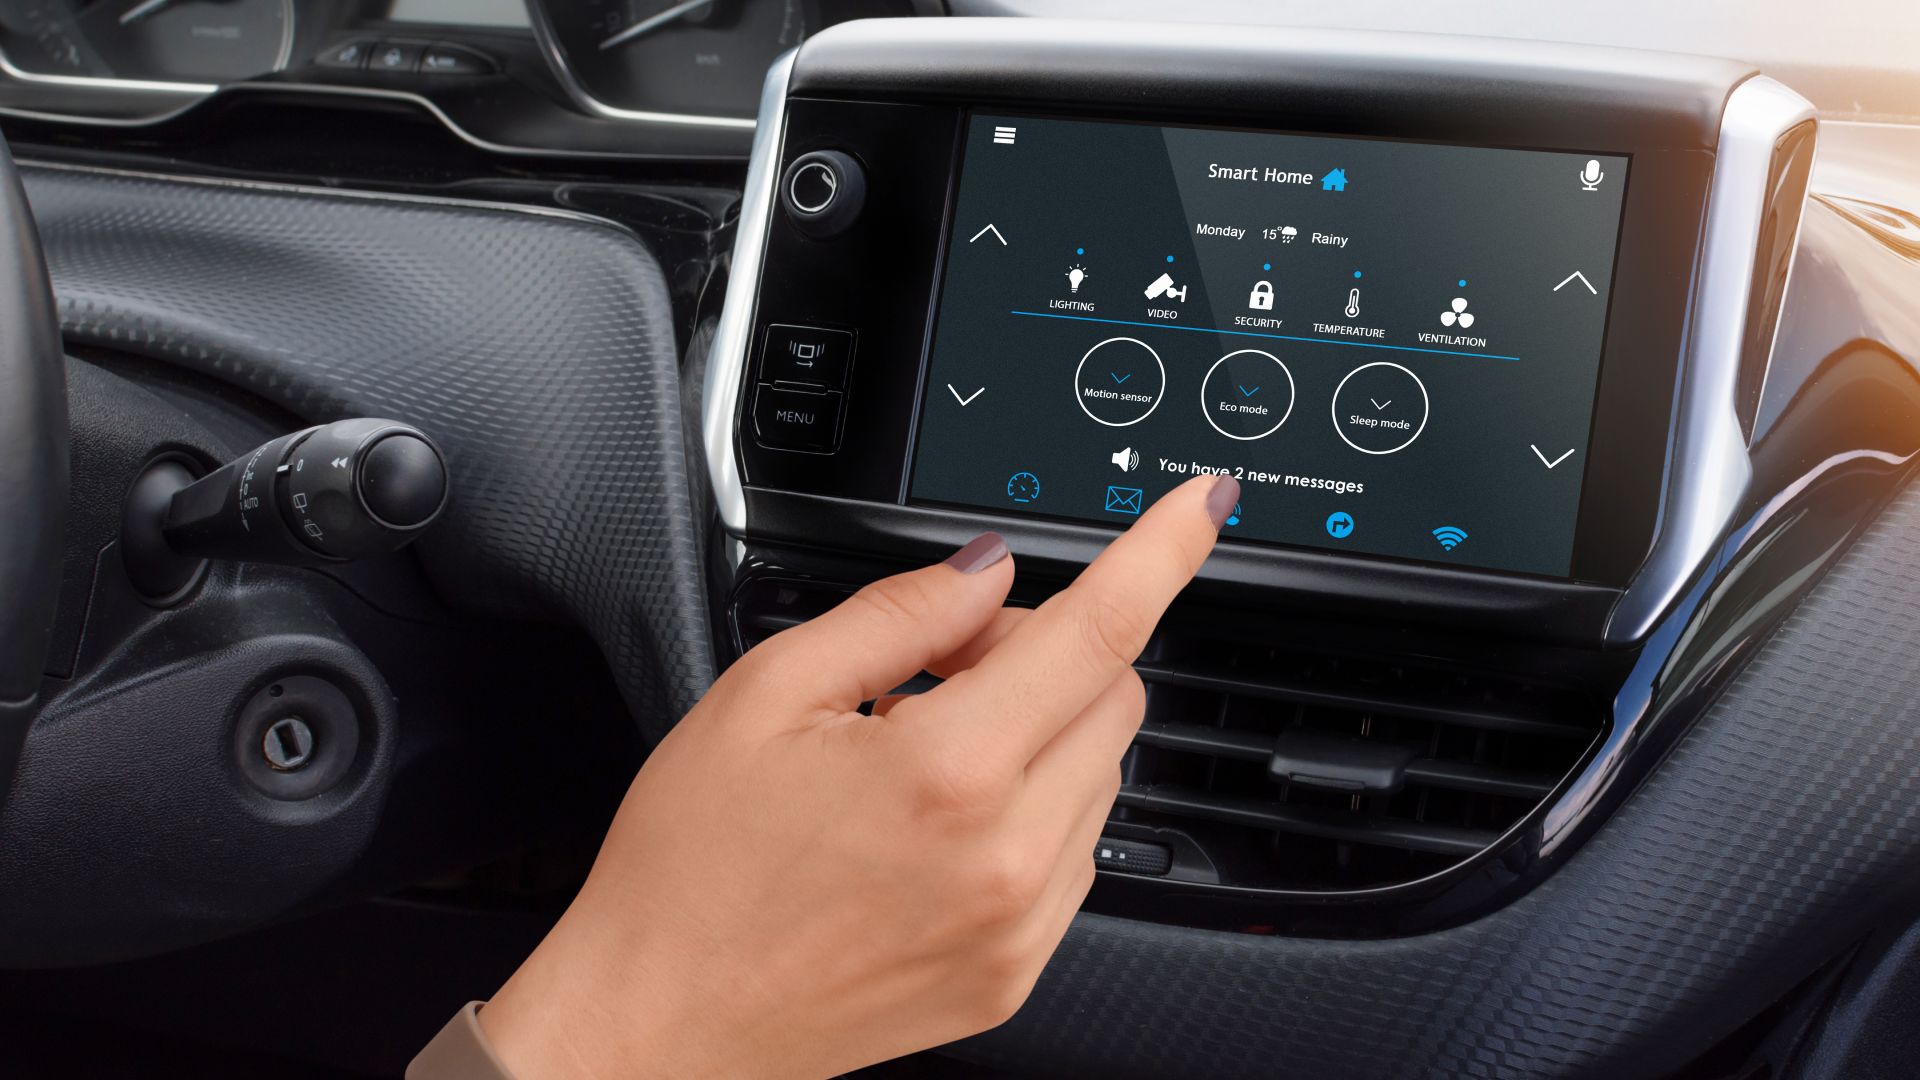 Connected Carssmartphon: Das Smartphone wird immer mehr zur Auto